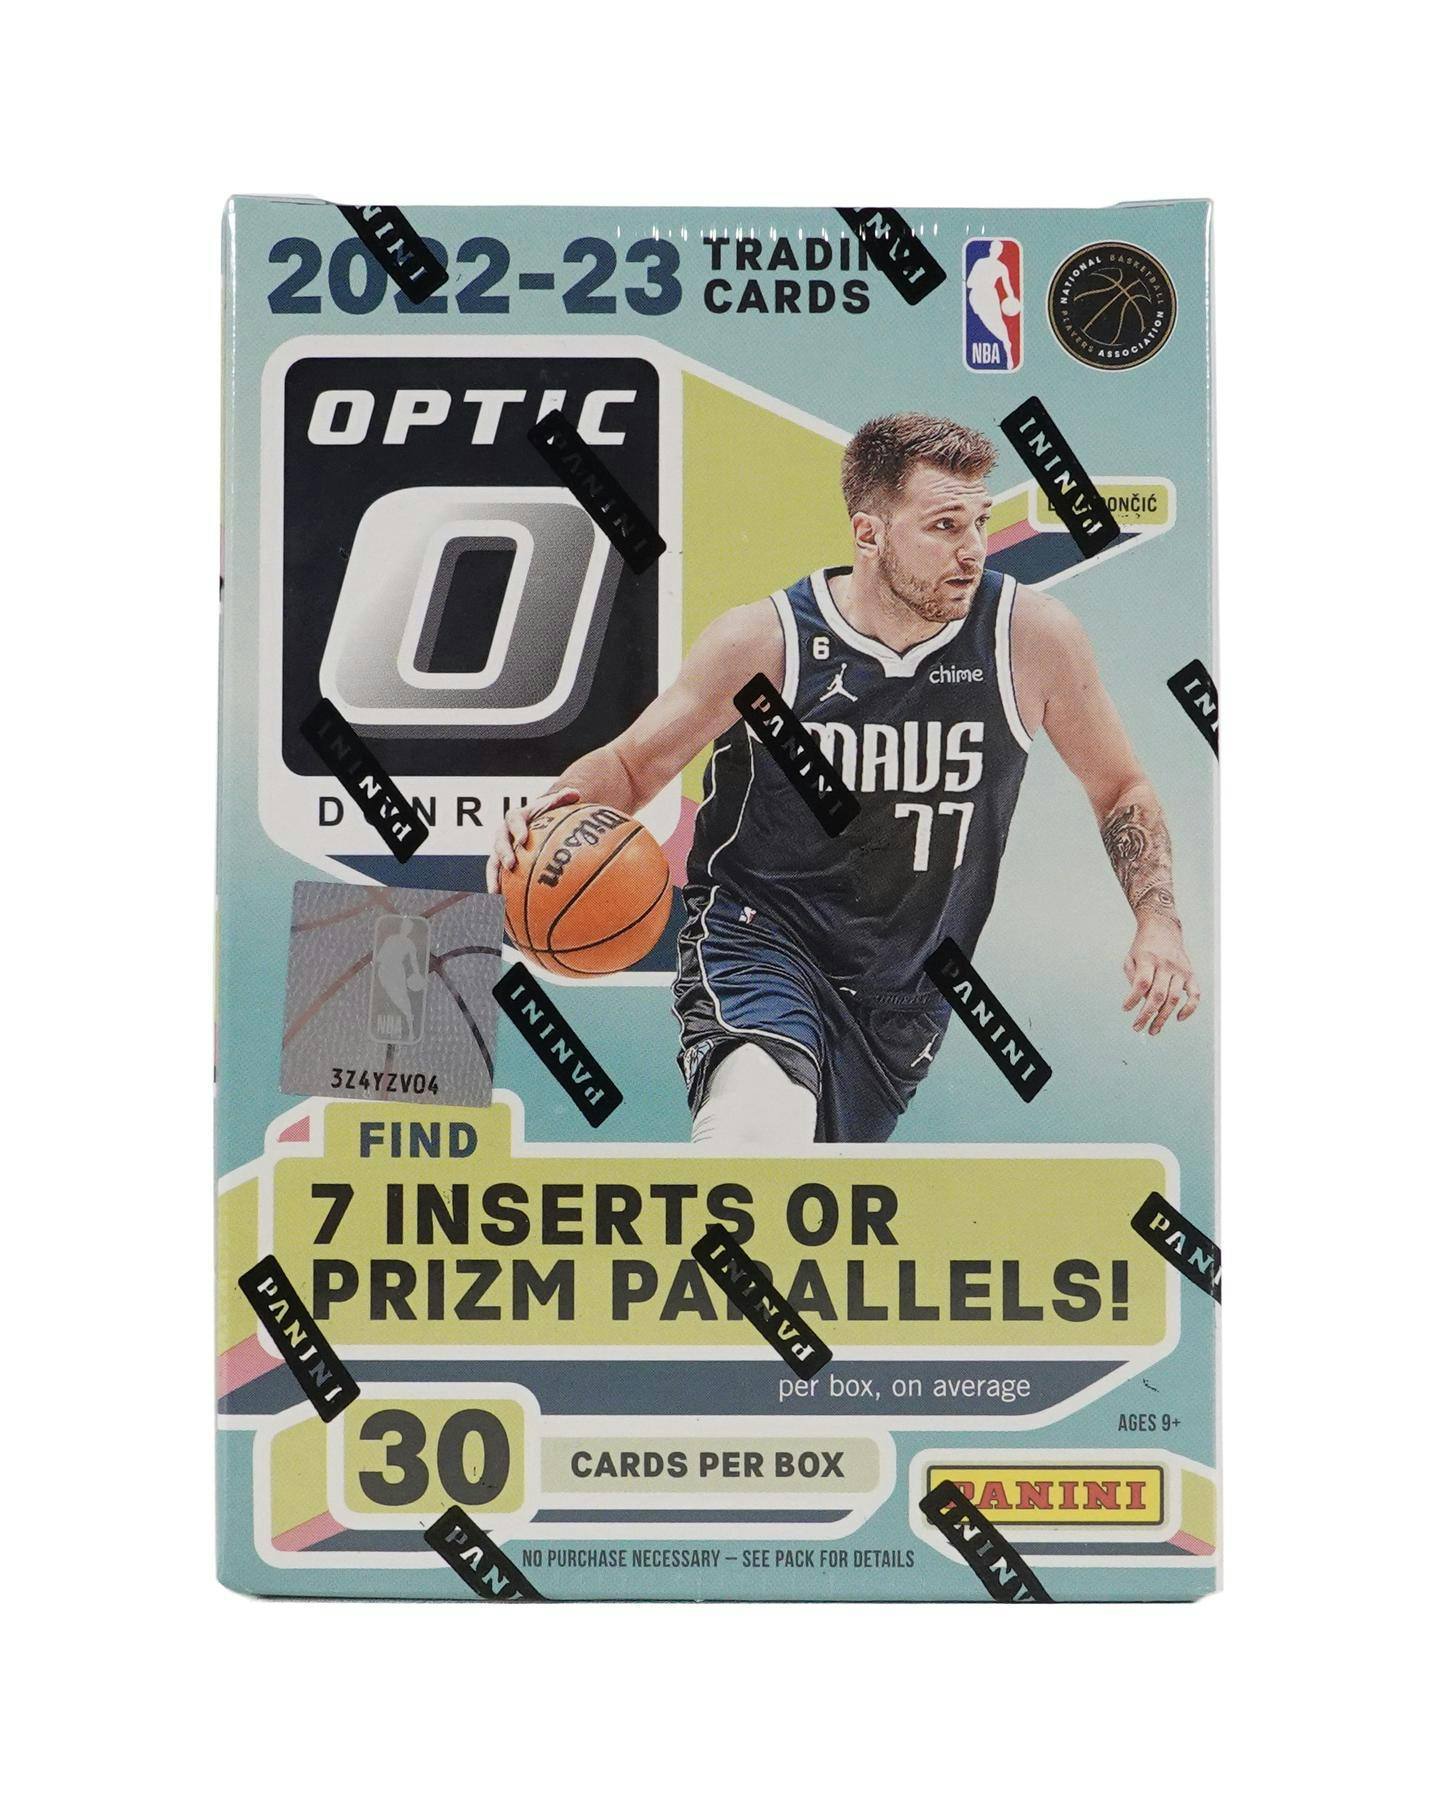 2022/23 Panini Donruss Basketball Hobby Pack